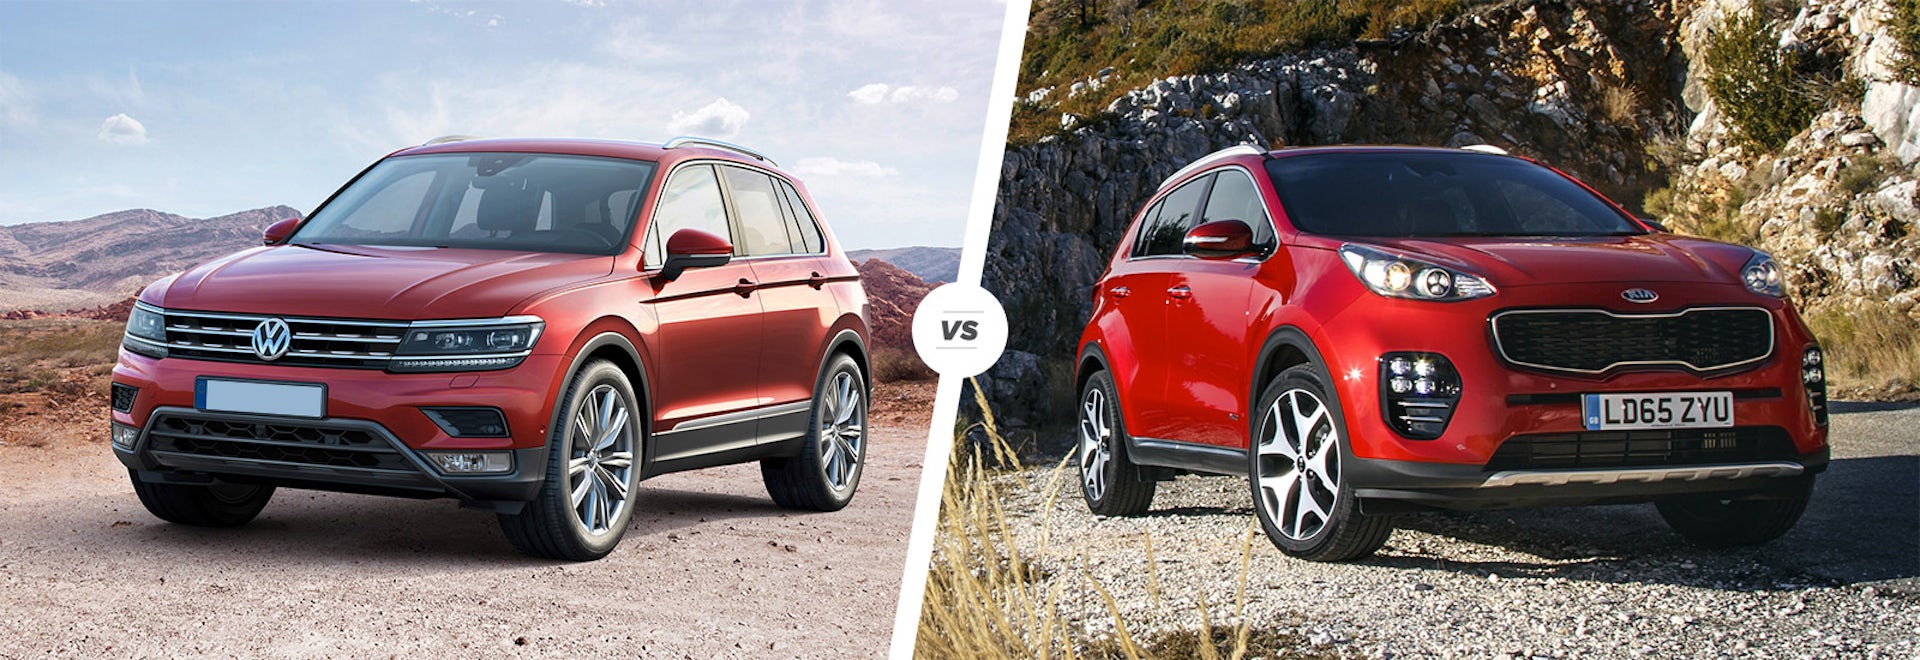 Volkswagen Tiguan vs Kia Sportage comparison carwow